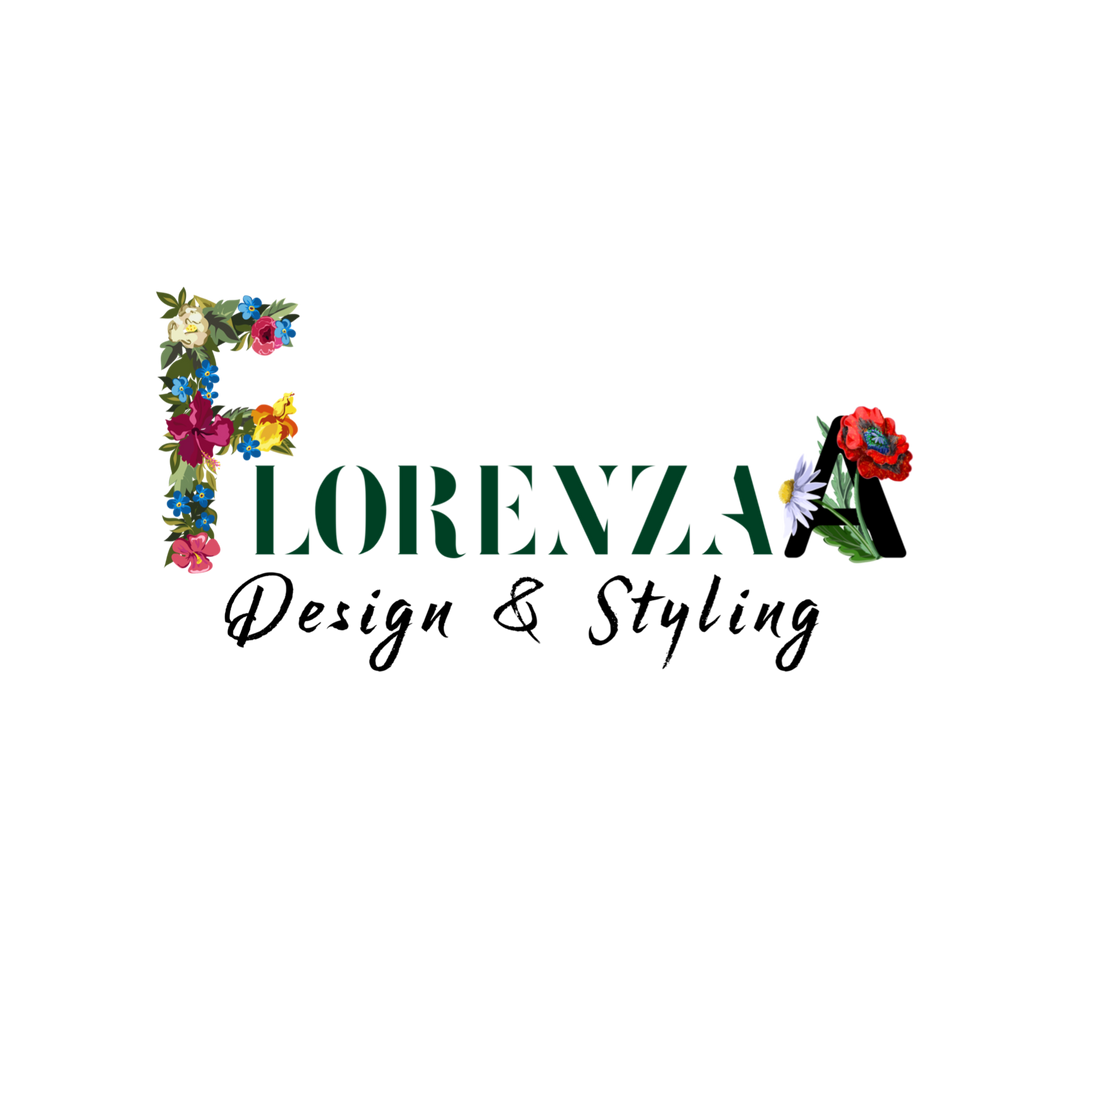 florenzaa flowers, florenzaa design n styling